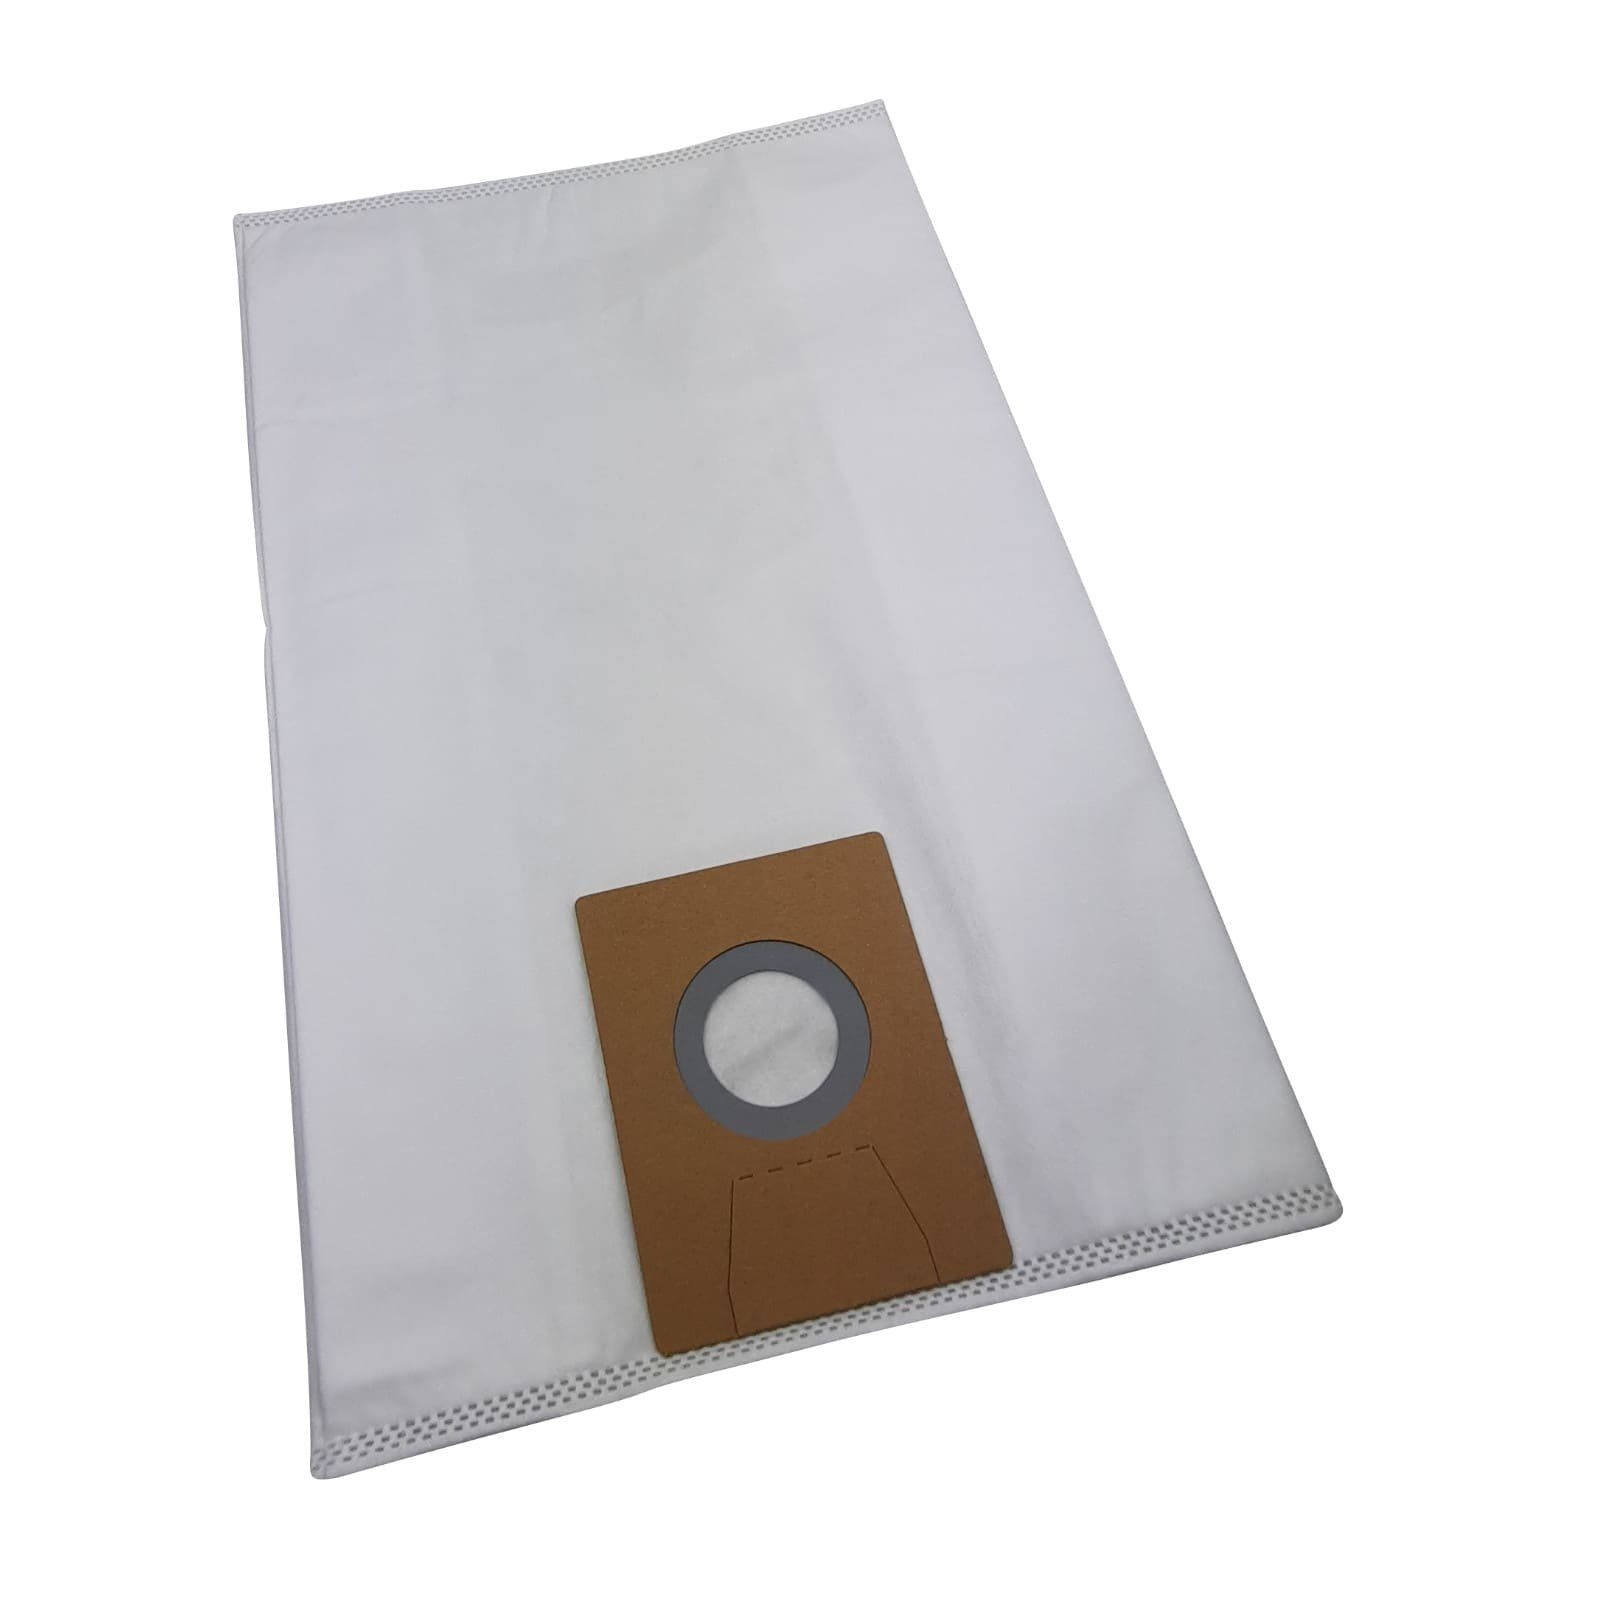 Reinica Staubsaugerbeutel passend für Clean a Saugerbeutel la Staubbeutel Beutel Card 10er-Pack Filtertüten K103200942